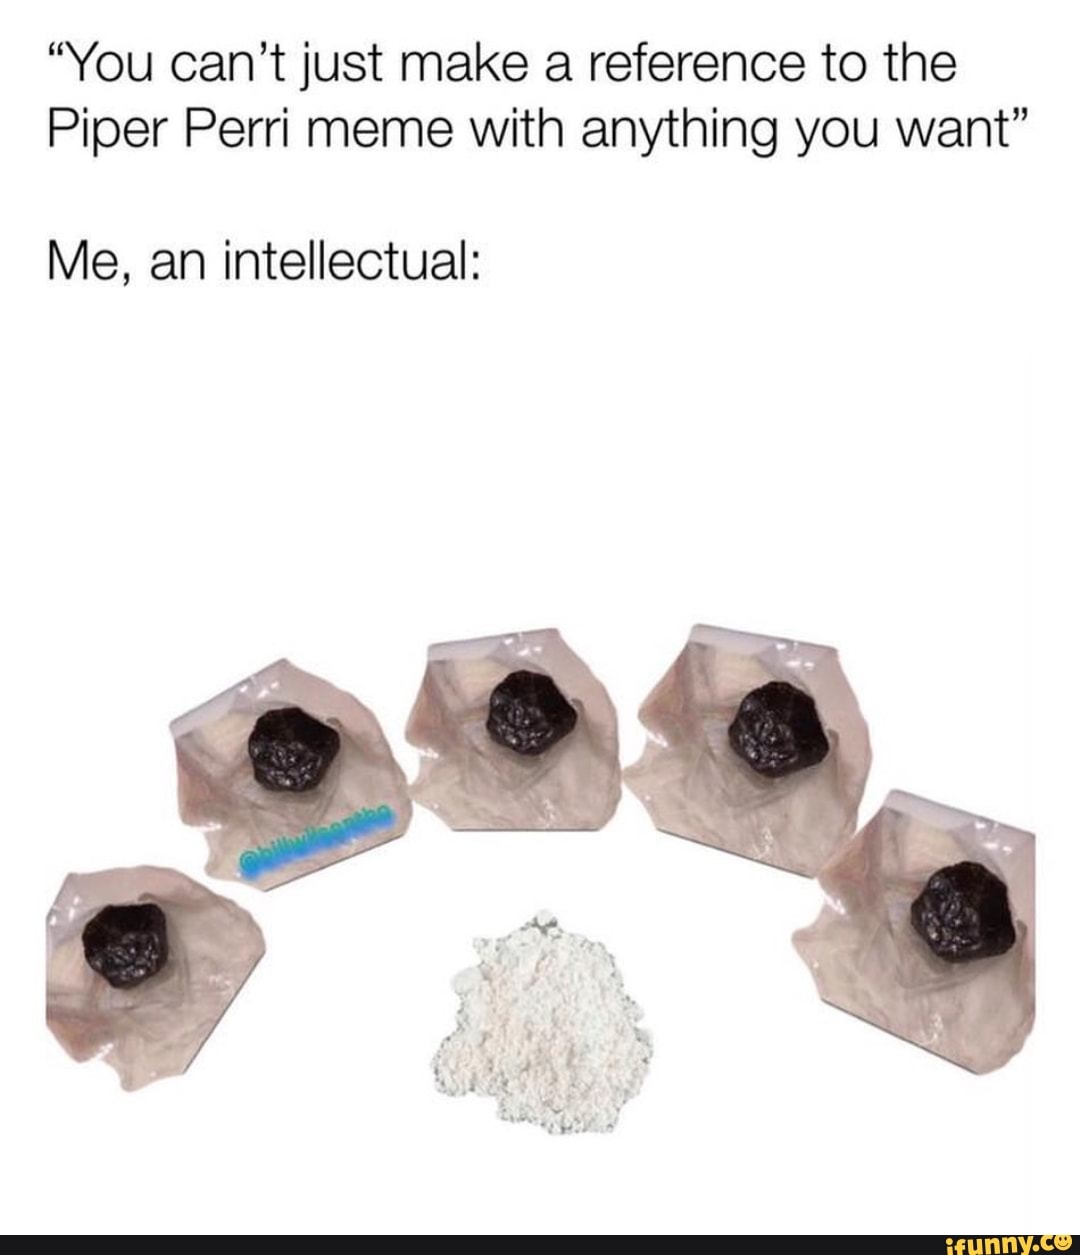 Piper perri meme original